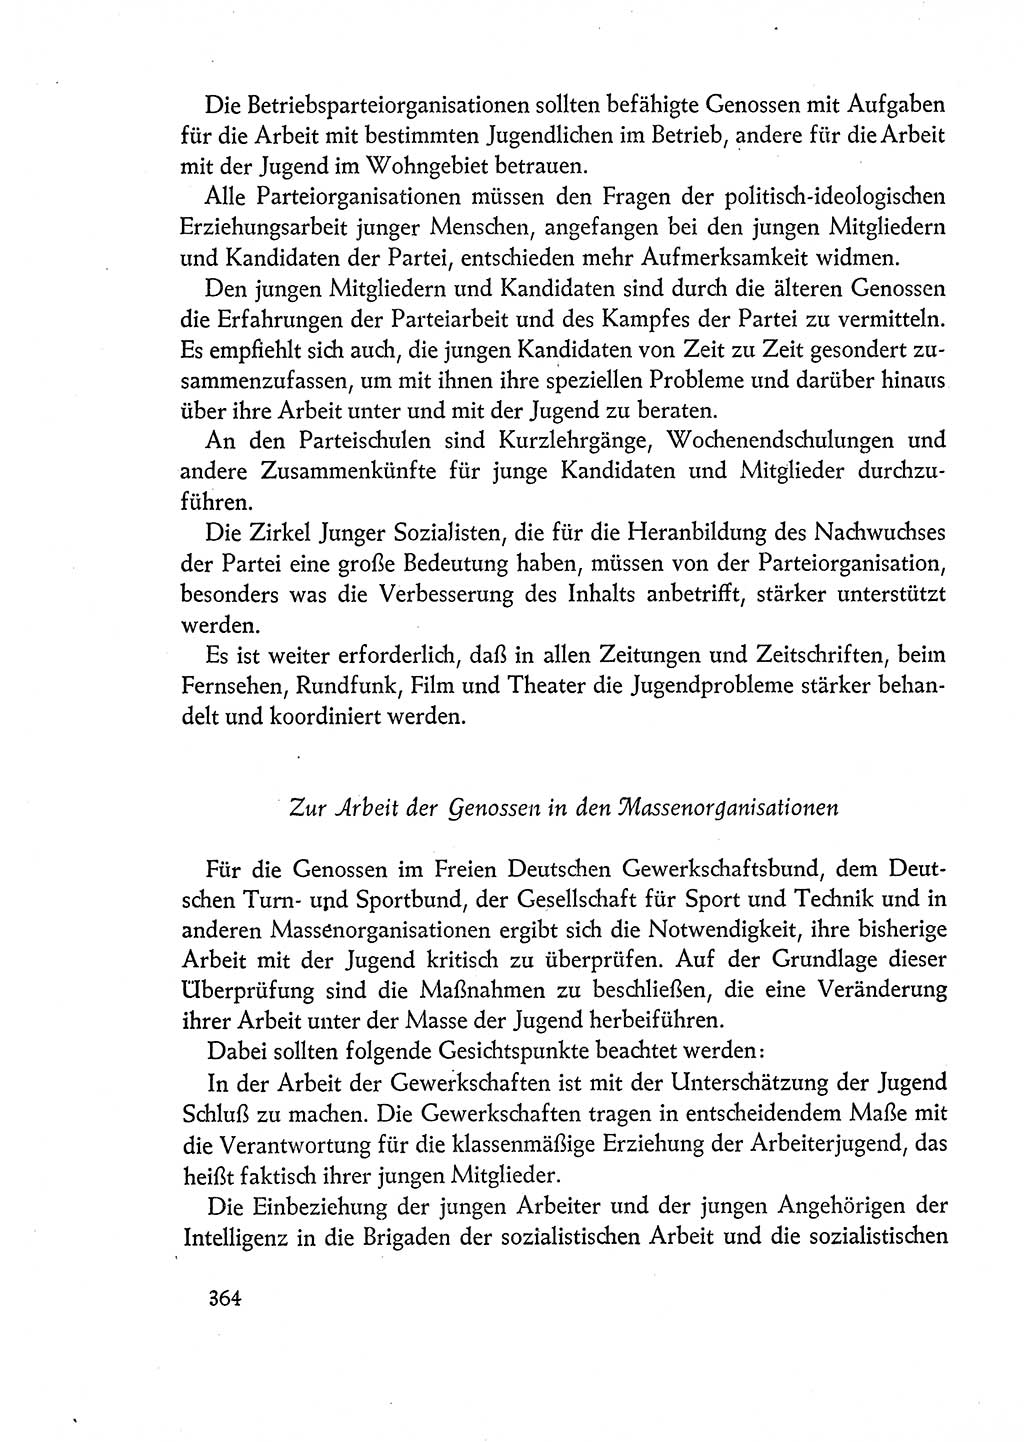 Dokumente der Sozialistischen Einheitspartei Deutschlands (SED) [Deutsche Demokratische Republik (DDR)] 1960-1961, Seite 364 (Dok. SED DDR 1960-1961, S. 364)